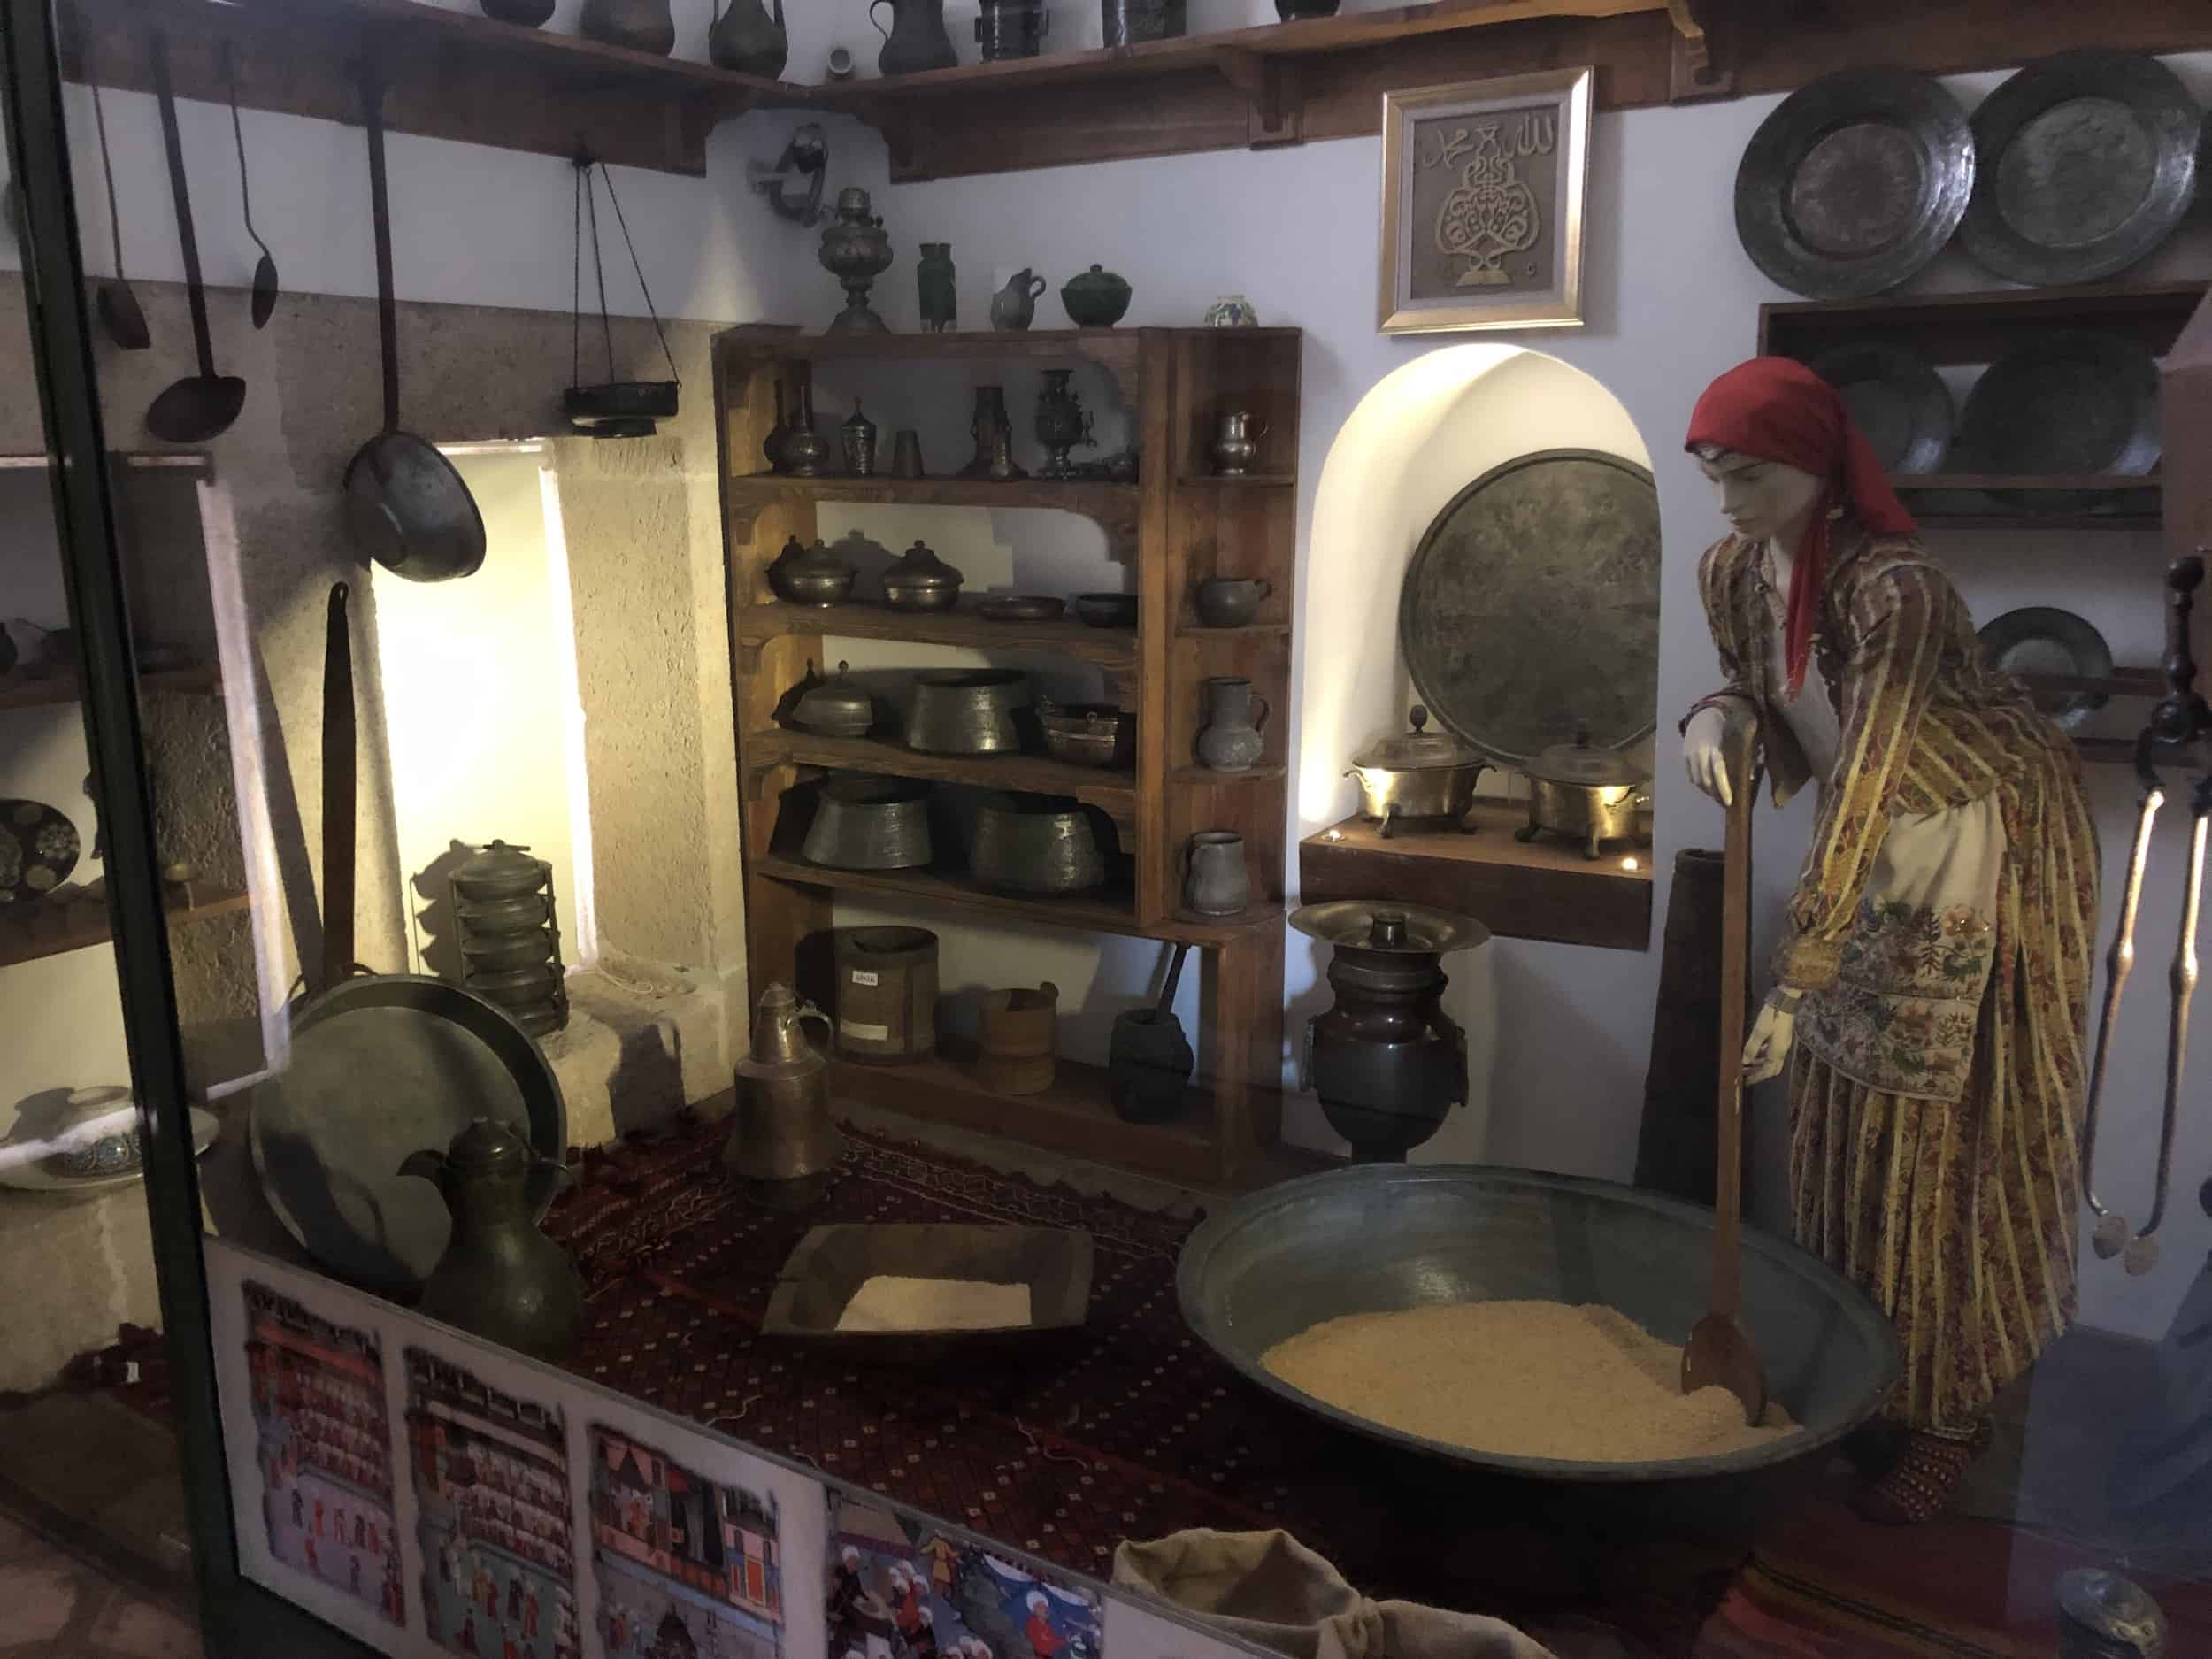 Kitchen Utensils Room at the Edirne Turkish and Islamic Art Museum in Edirne, Turkey